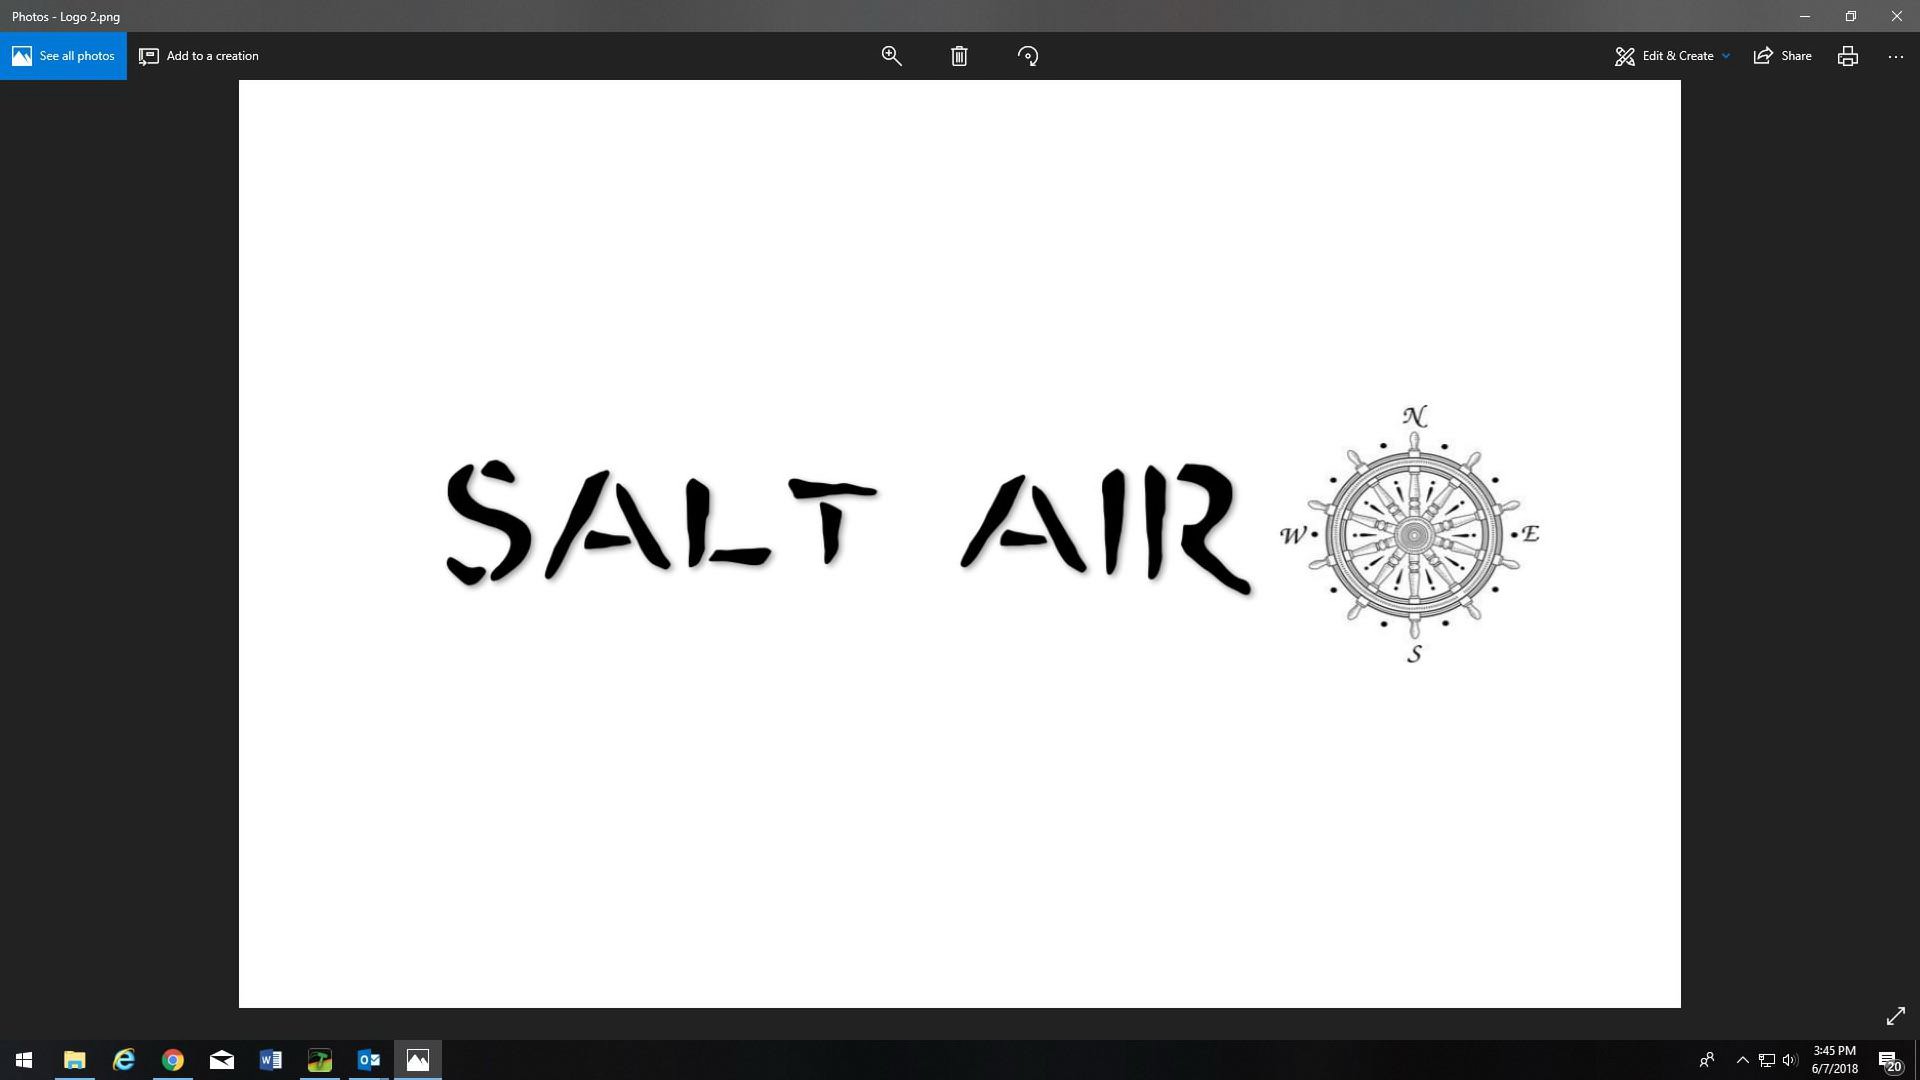 Trademark Logo SALT AIR